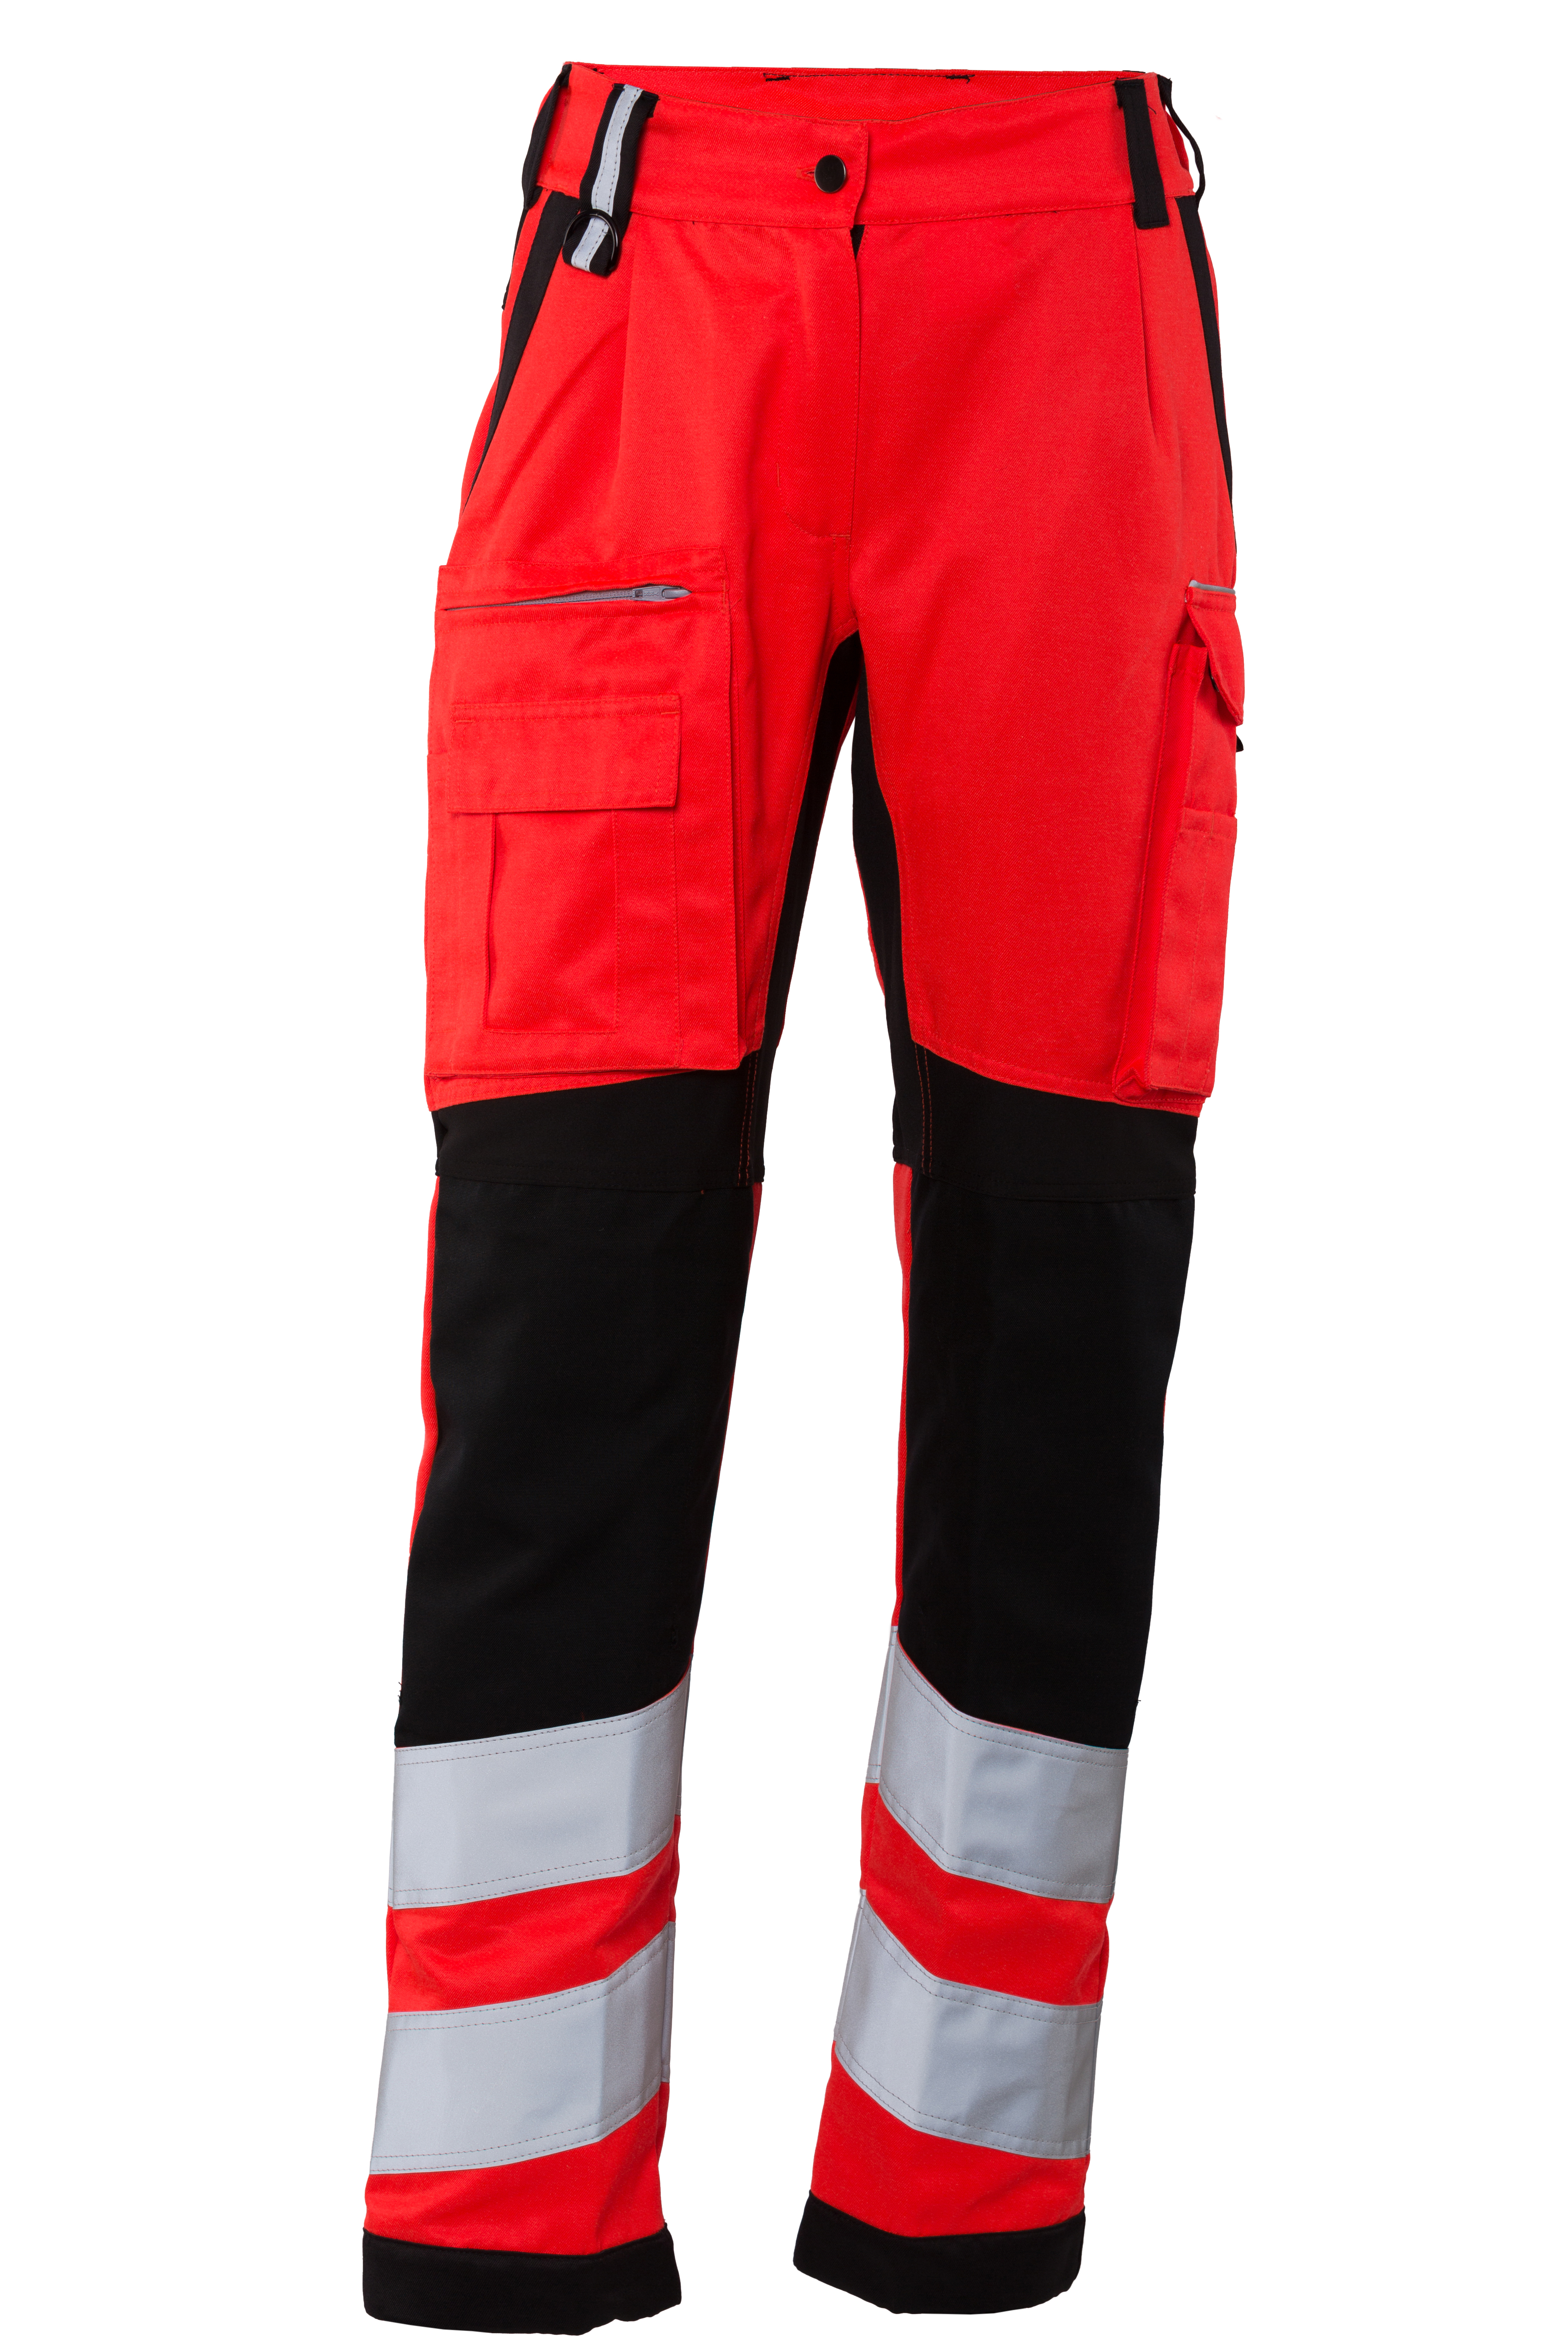 Rescuewear Damen Hose Stretch HiVis Klasse 2 Neon Rot / Schwarz - 40